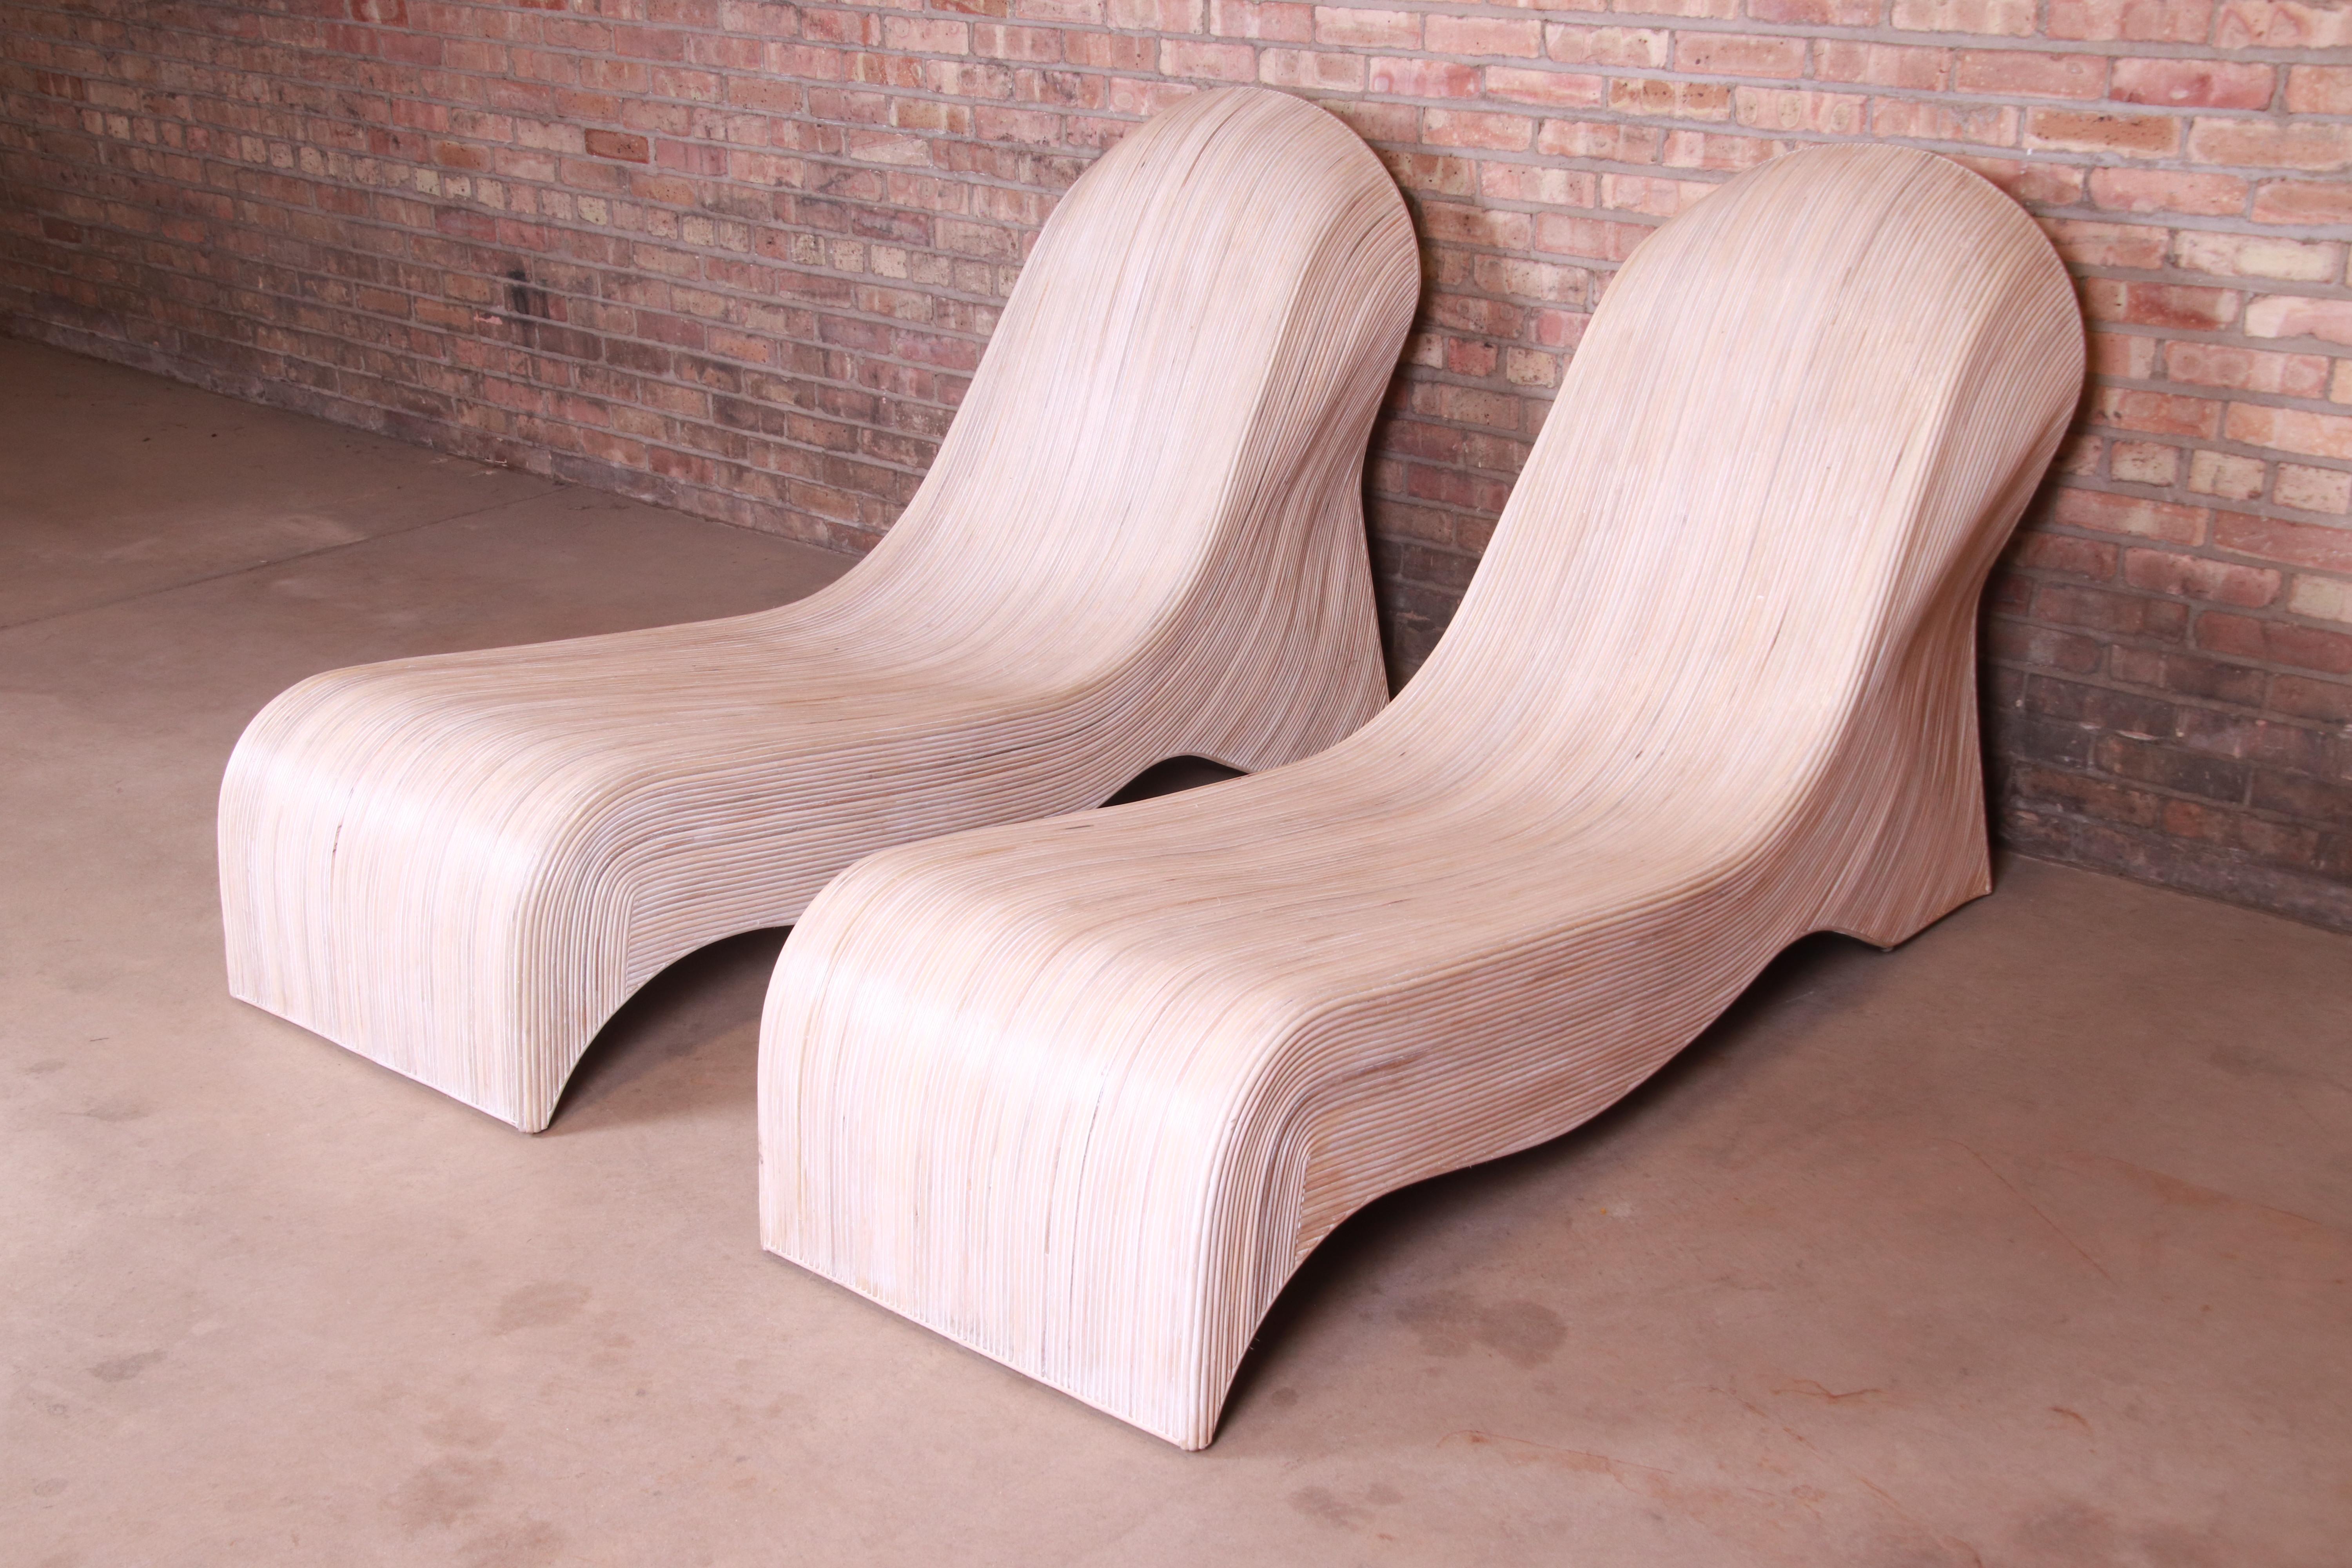 Une magnifique paire de chaises longues en rotin fendu, organiques et modernes

Par Betty Cobonpue, Collection 